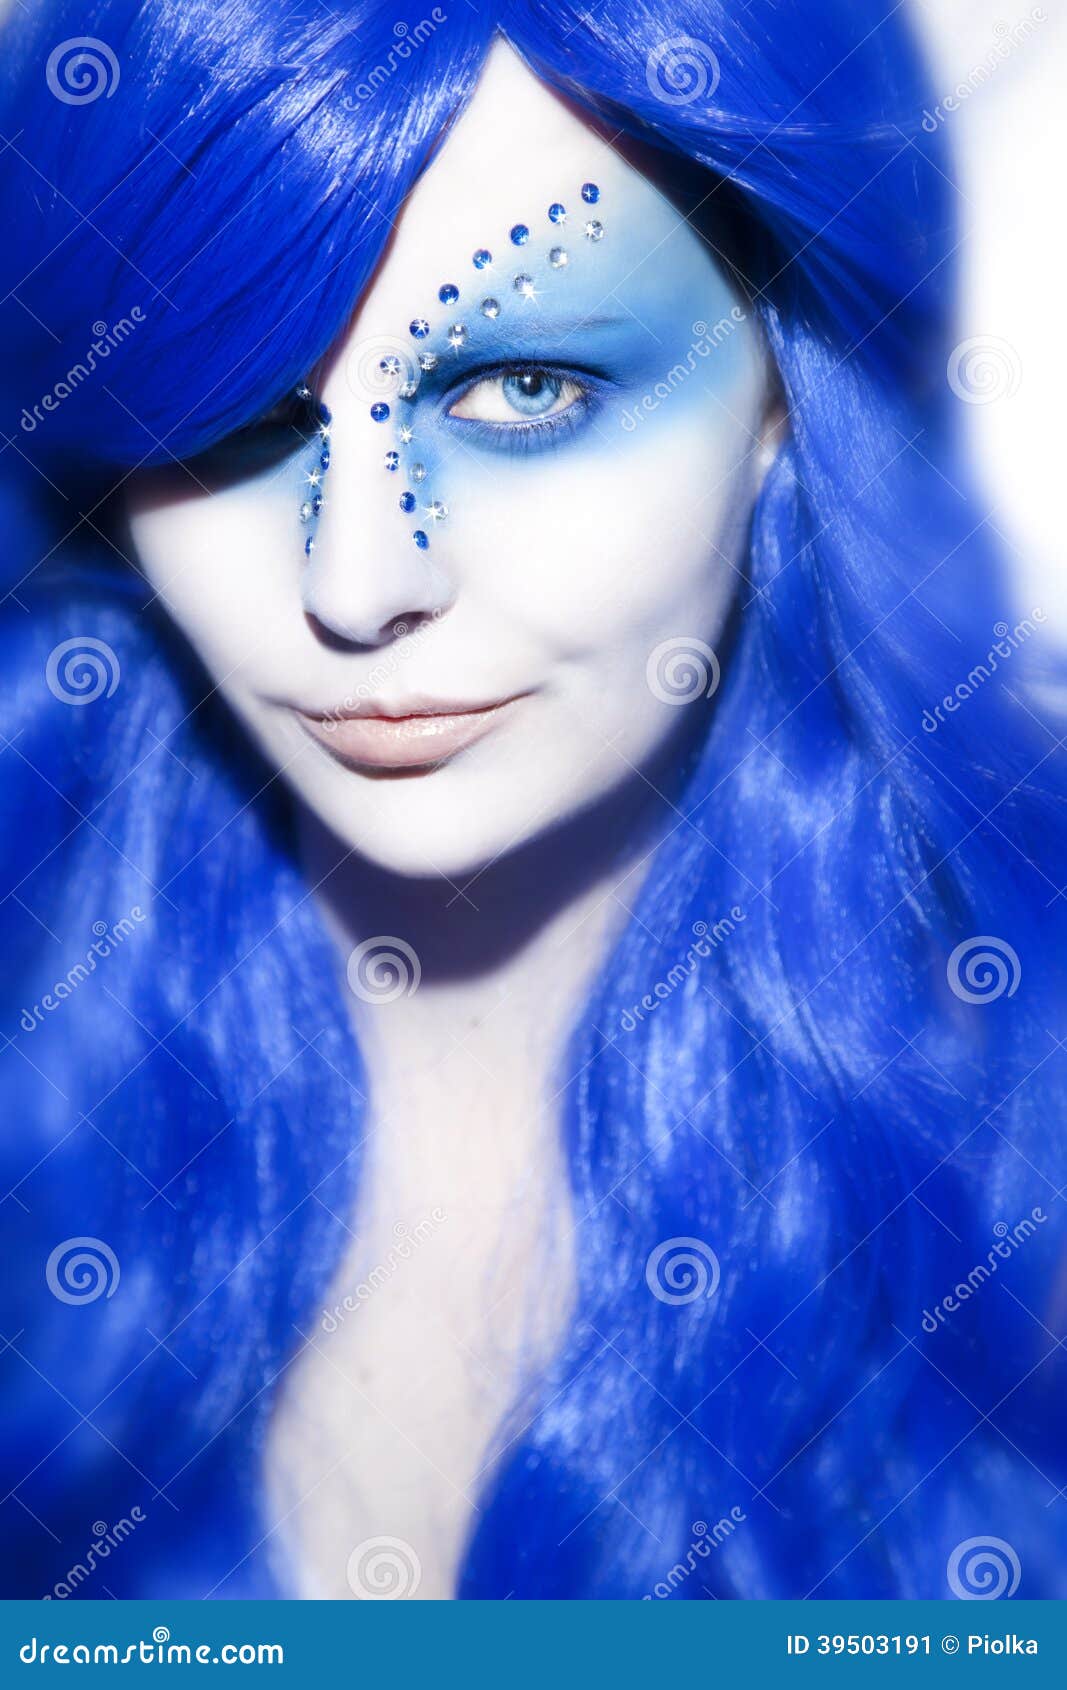 mulher-bonita-com-cabelo-azul-e-compe-39503191.jpg